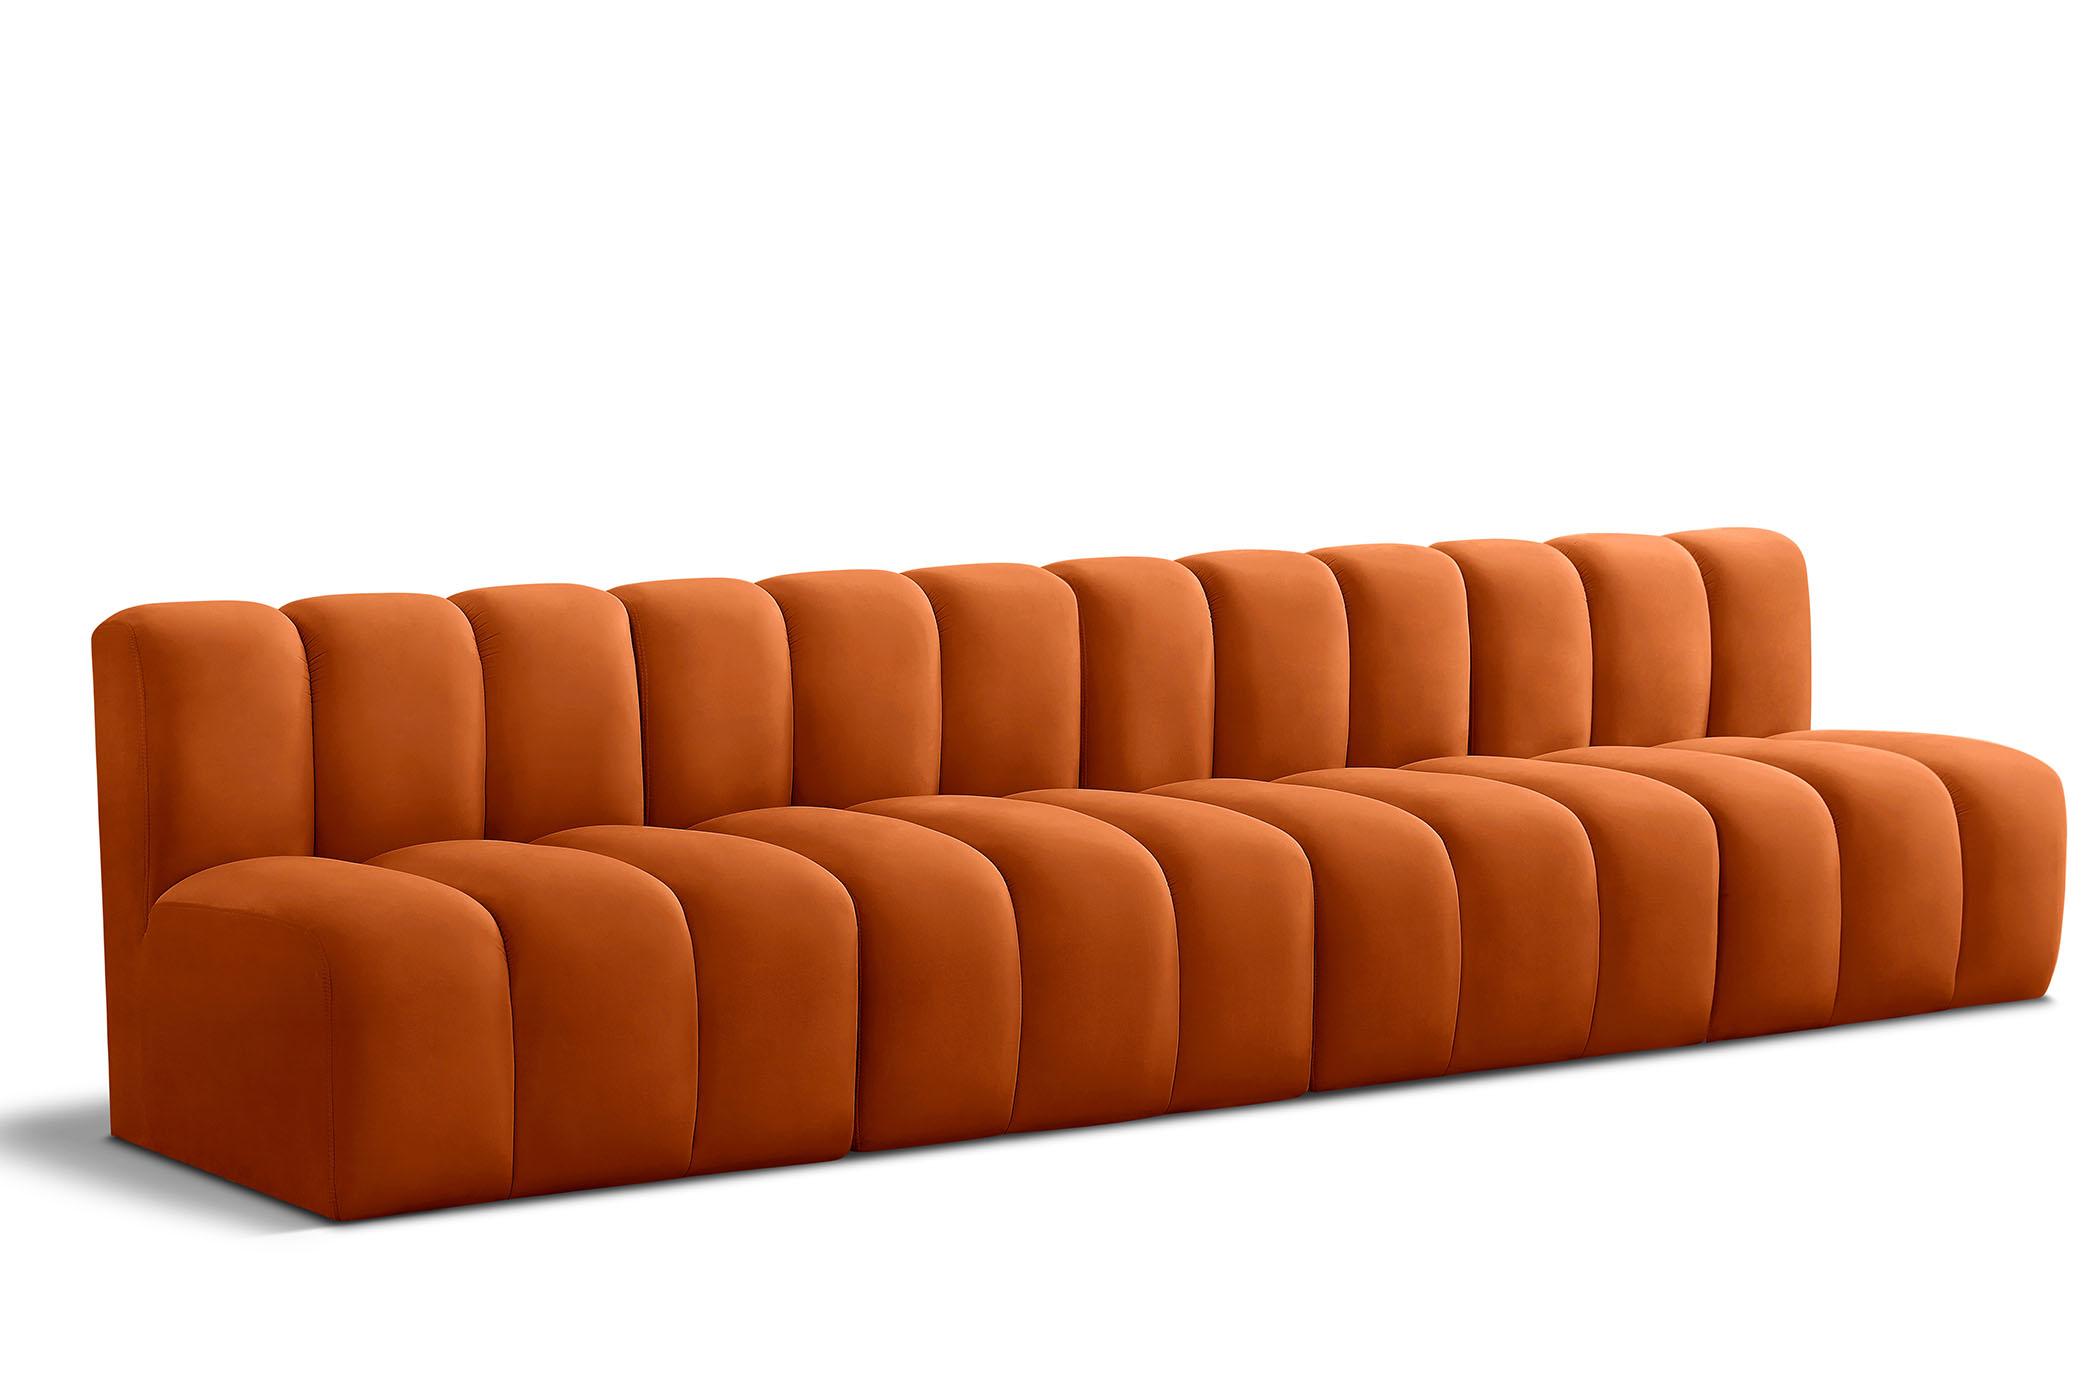 Contemporary, Modern Modular Sectional Sofa ARC 103Cognac-S4E 103Cognac-S4E in Cognac Velvet